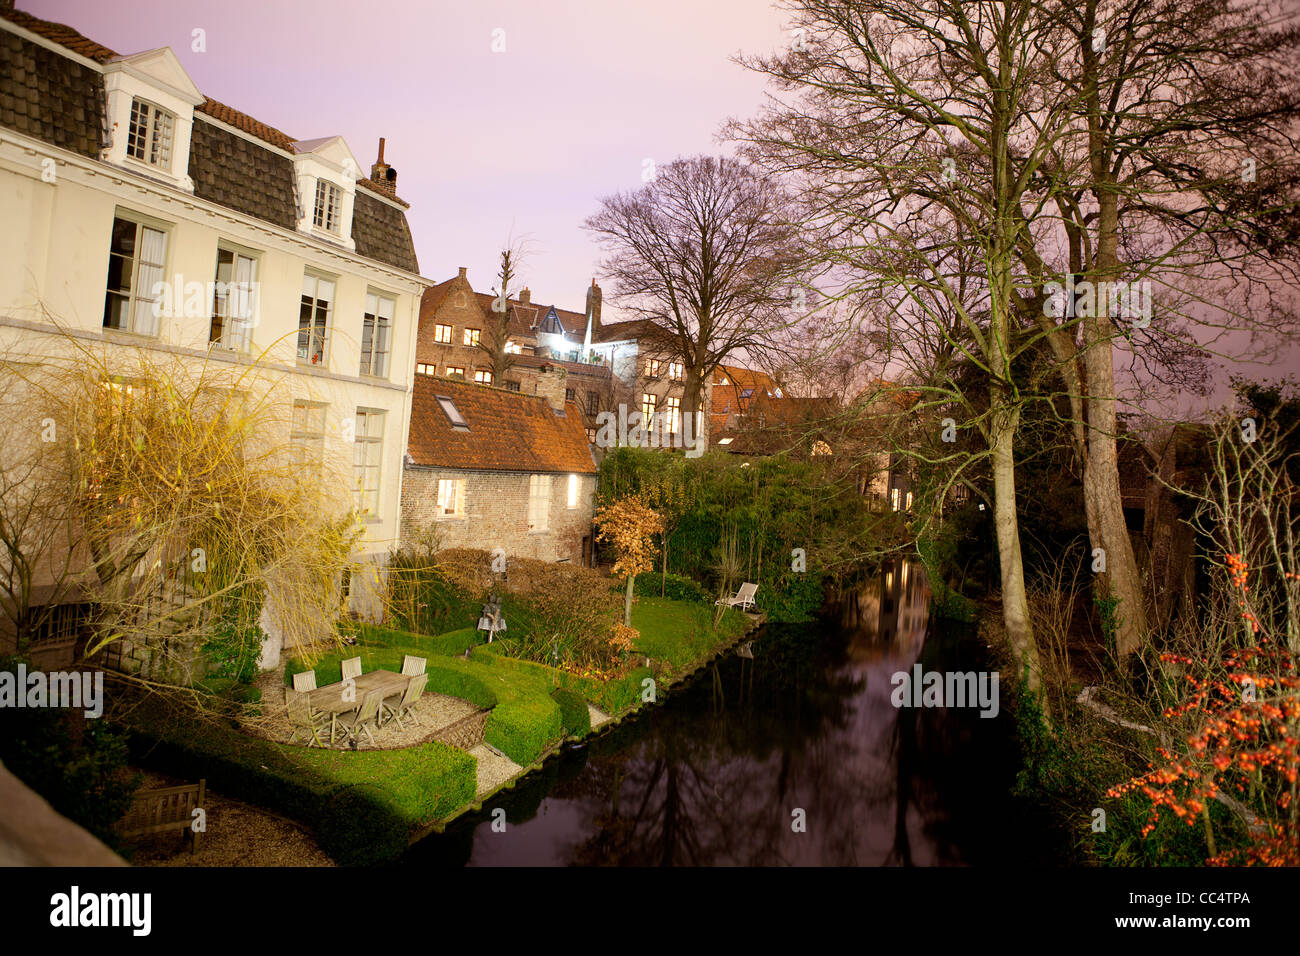 HDR nuit shot de maisons typiques à Brugge (Bruges) en Belgique. Banque D'Images